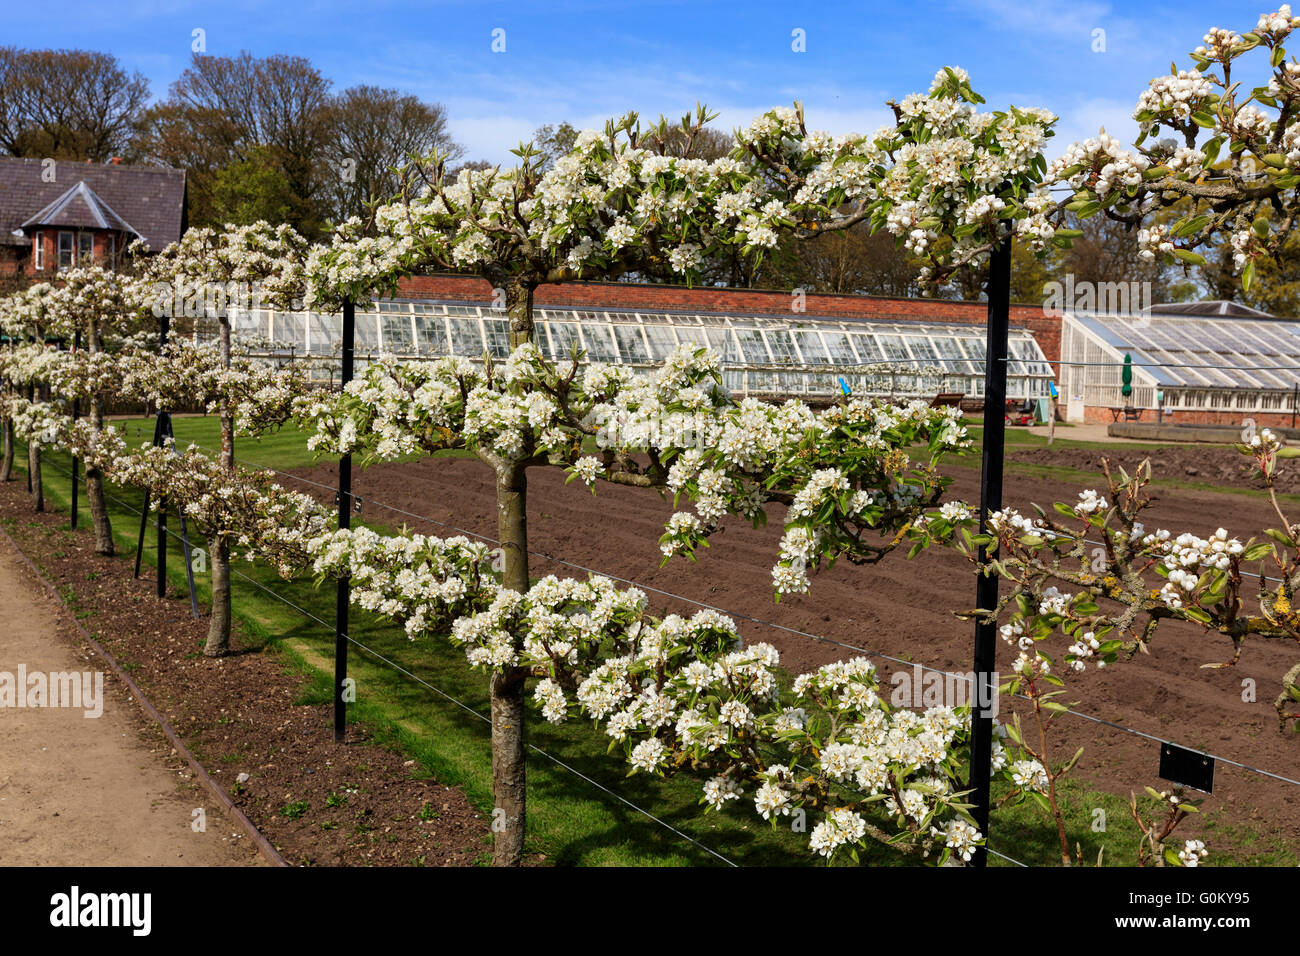 Espaliered fioritura degli alberi da frutto in un giardino durante la primavera. Foto Stock